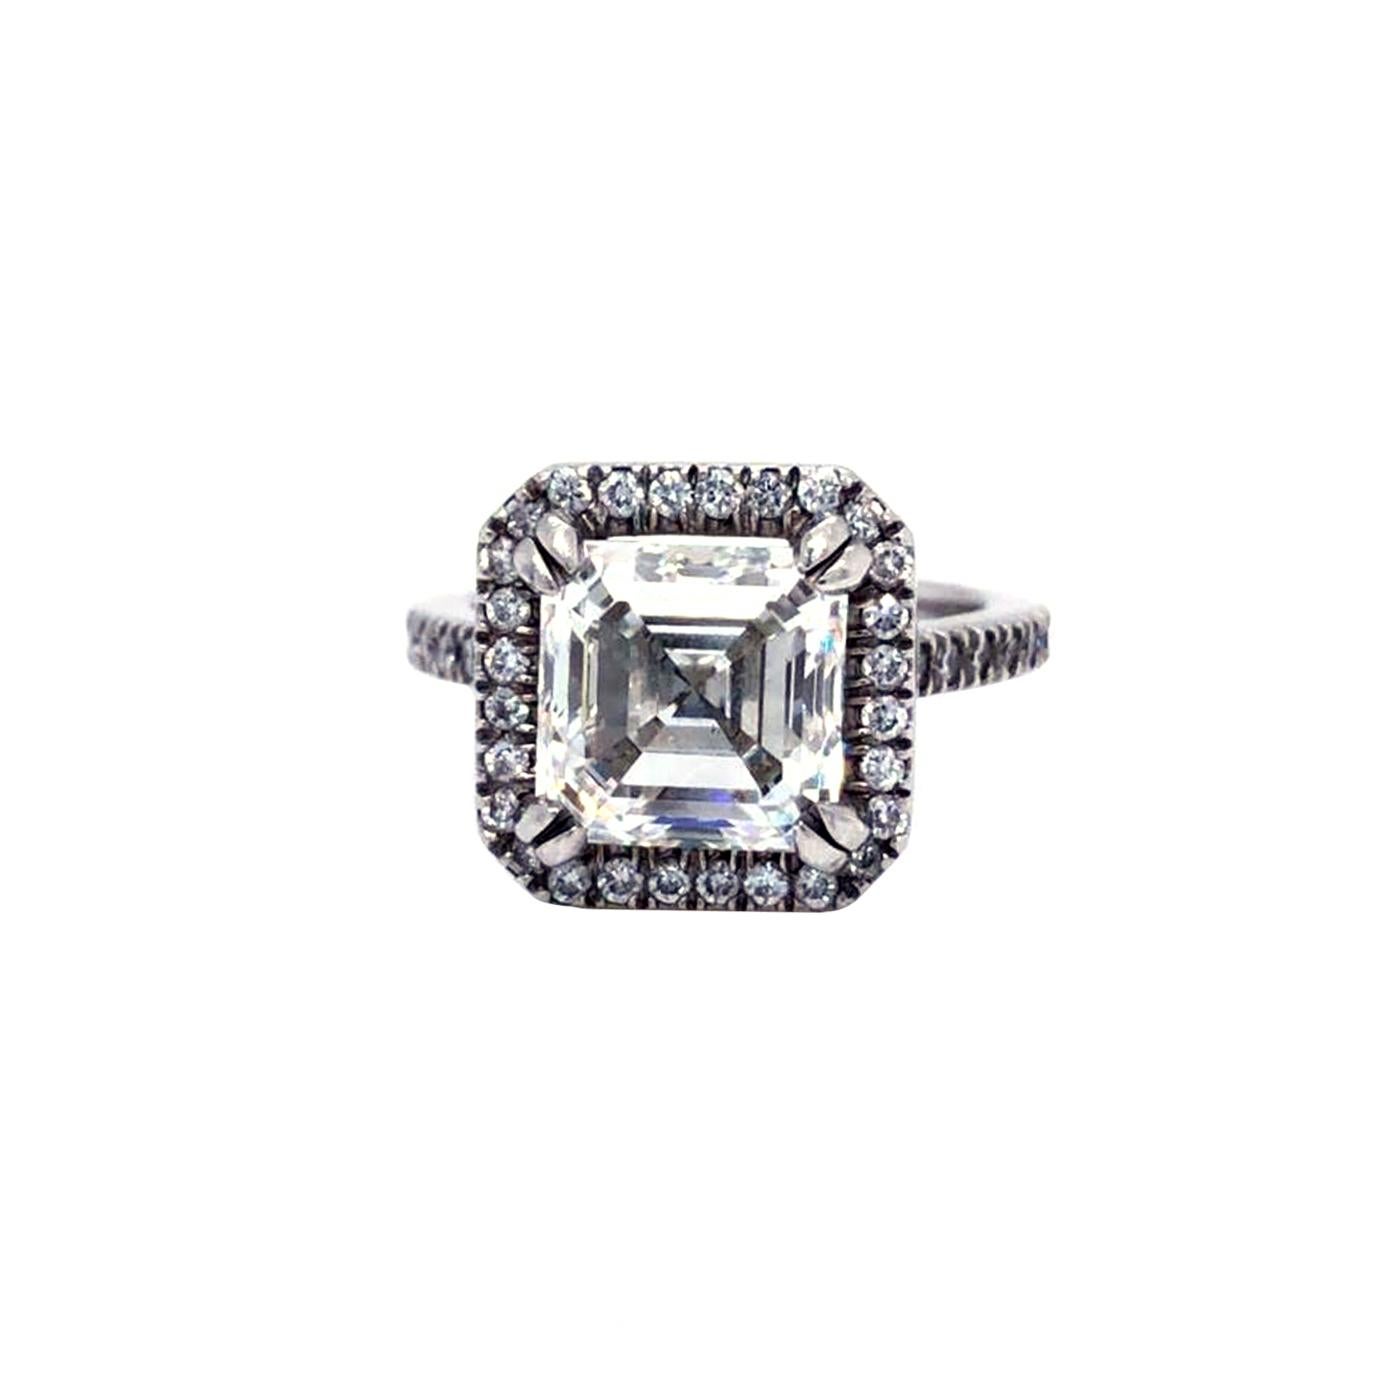 Dieser wunderschöne Diamantring wird von einem GIA-Zertifikat begleitet, das bescheinigt, dass der 4,02ct Asscher-Schliff Natural VS1 Klarheit Diamantring in Platin gefertigt ist. Dieser Ring wird perfekt für Ihren besonderen Menschen sein, dieses